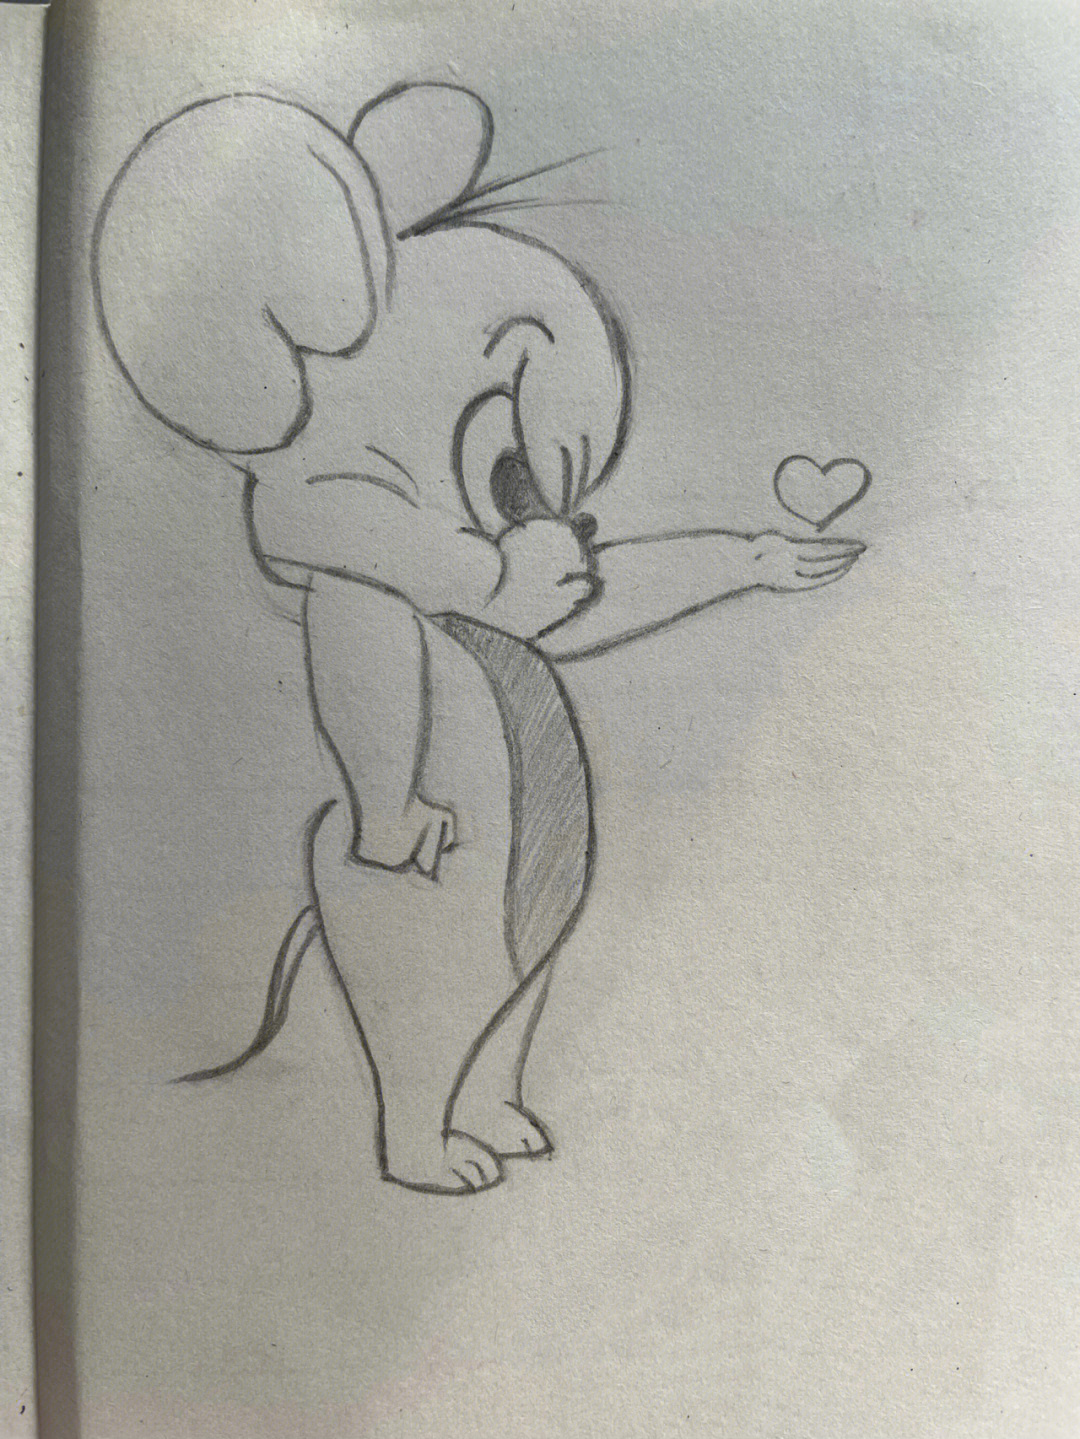 一步一步教我画杰瑞鼠图片